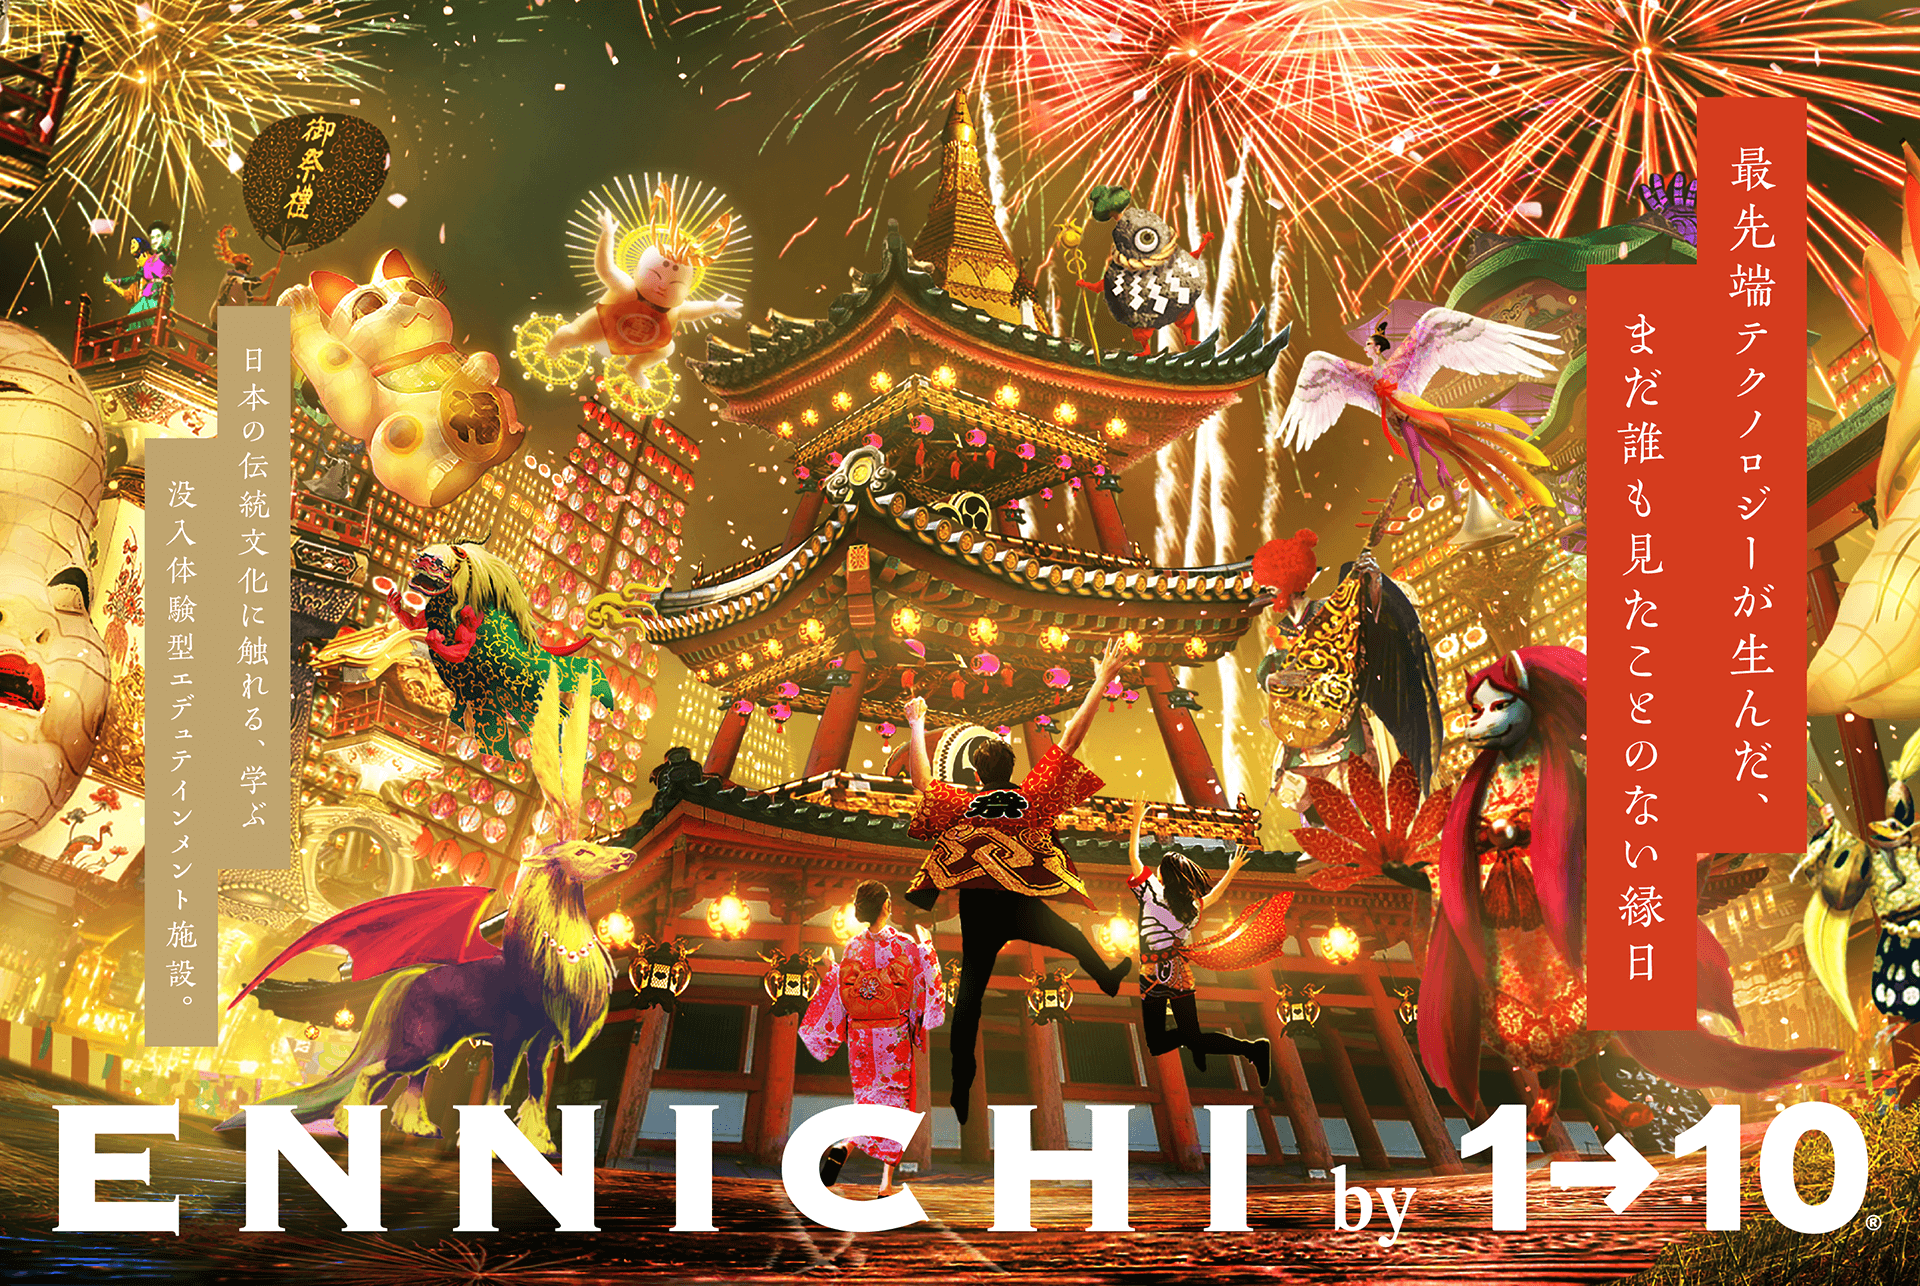 ENNICHI by 1→10